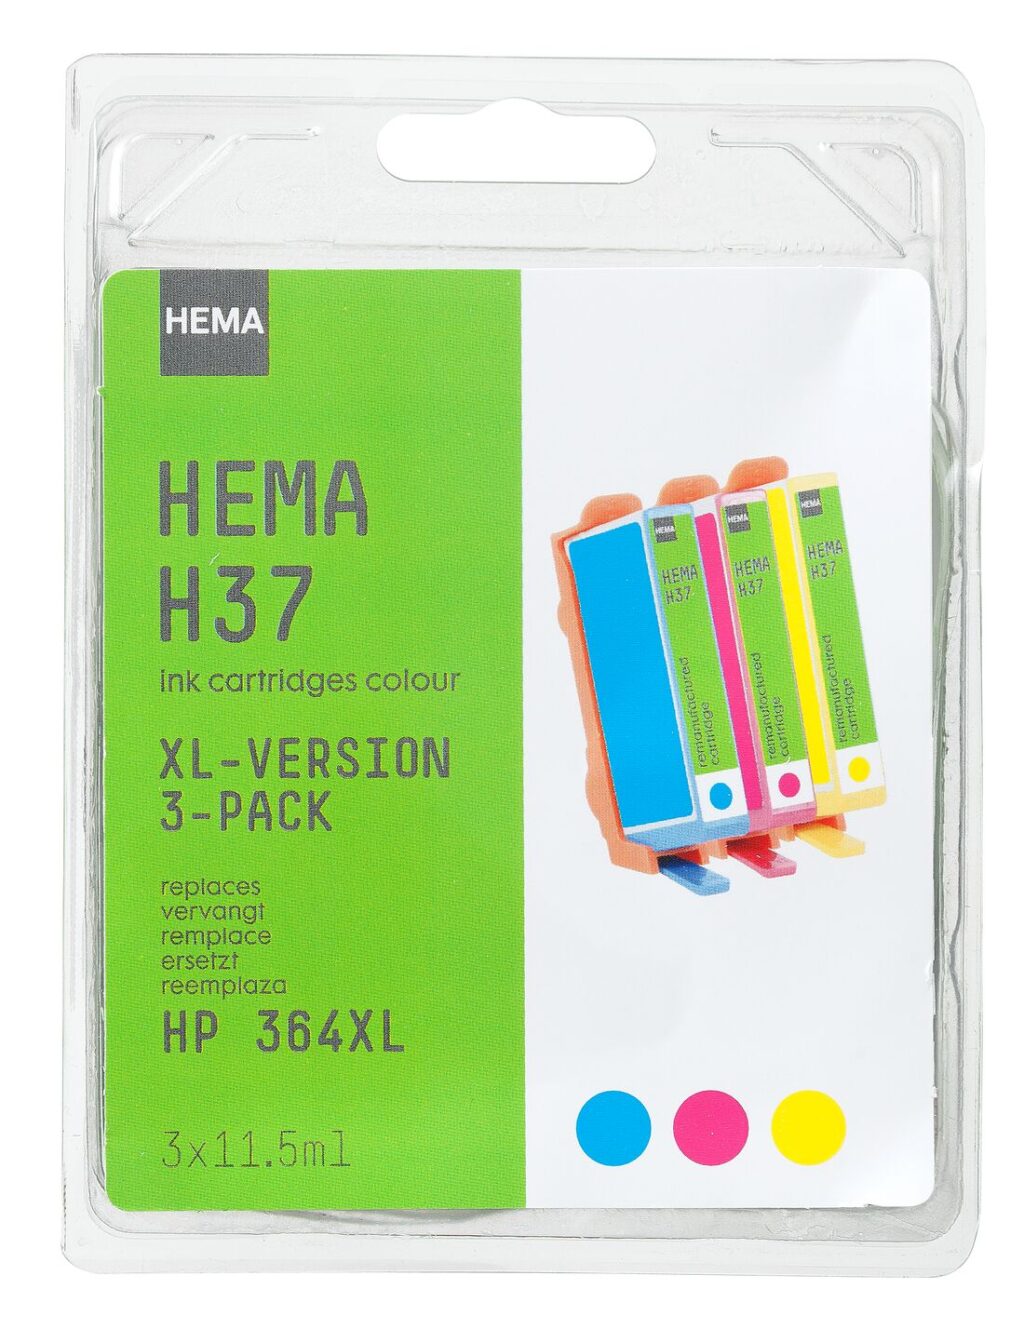 HEMA HEMA Cartridge H37 Voor De HP 364 CMY Multipack XL ~ Spinze.nl